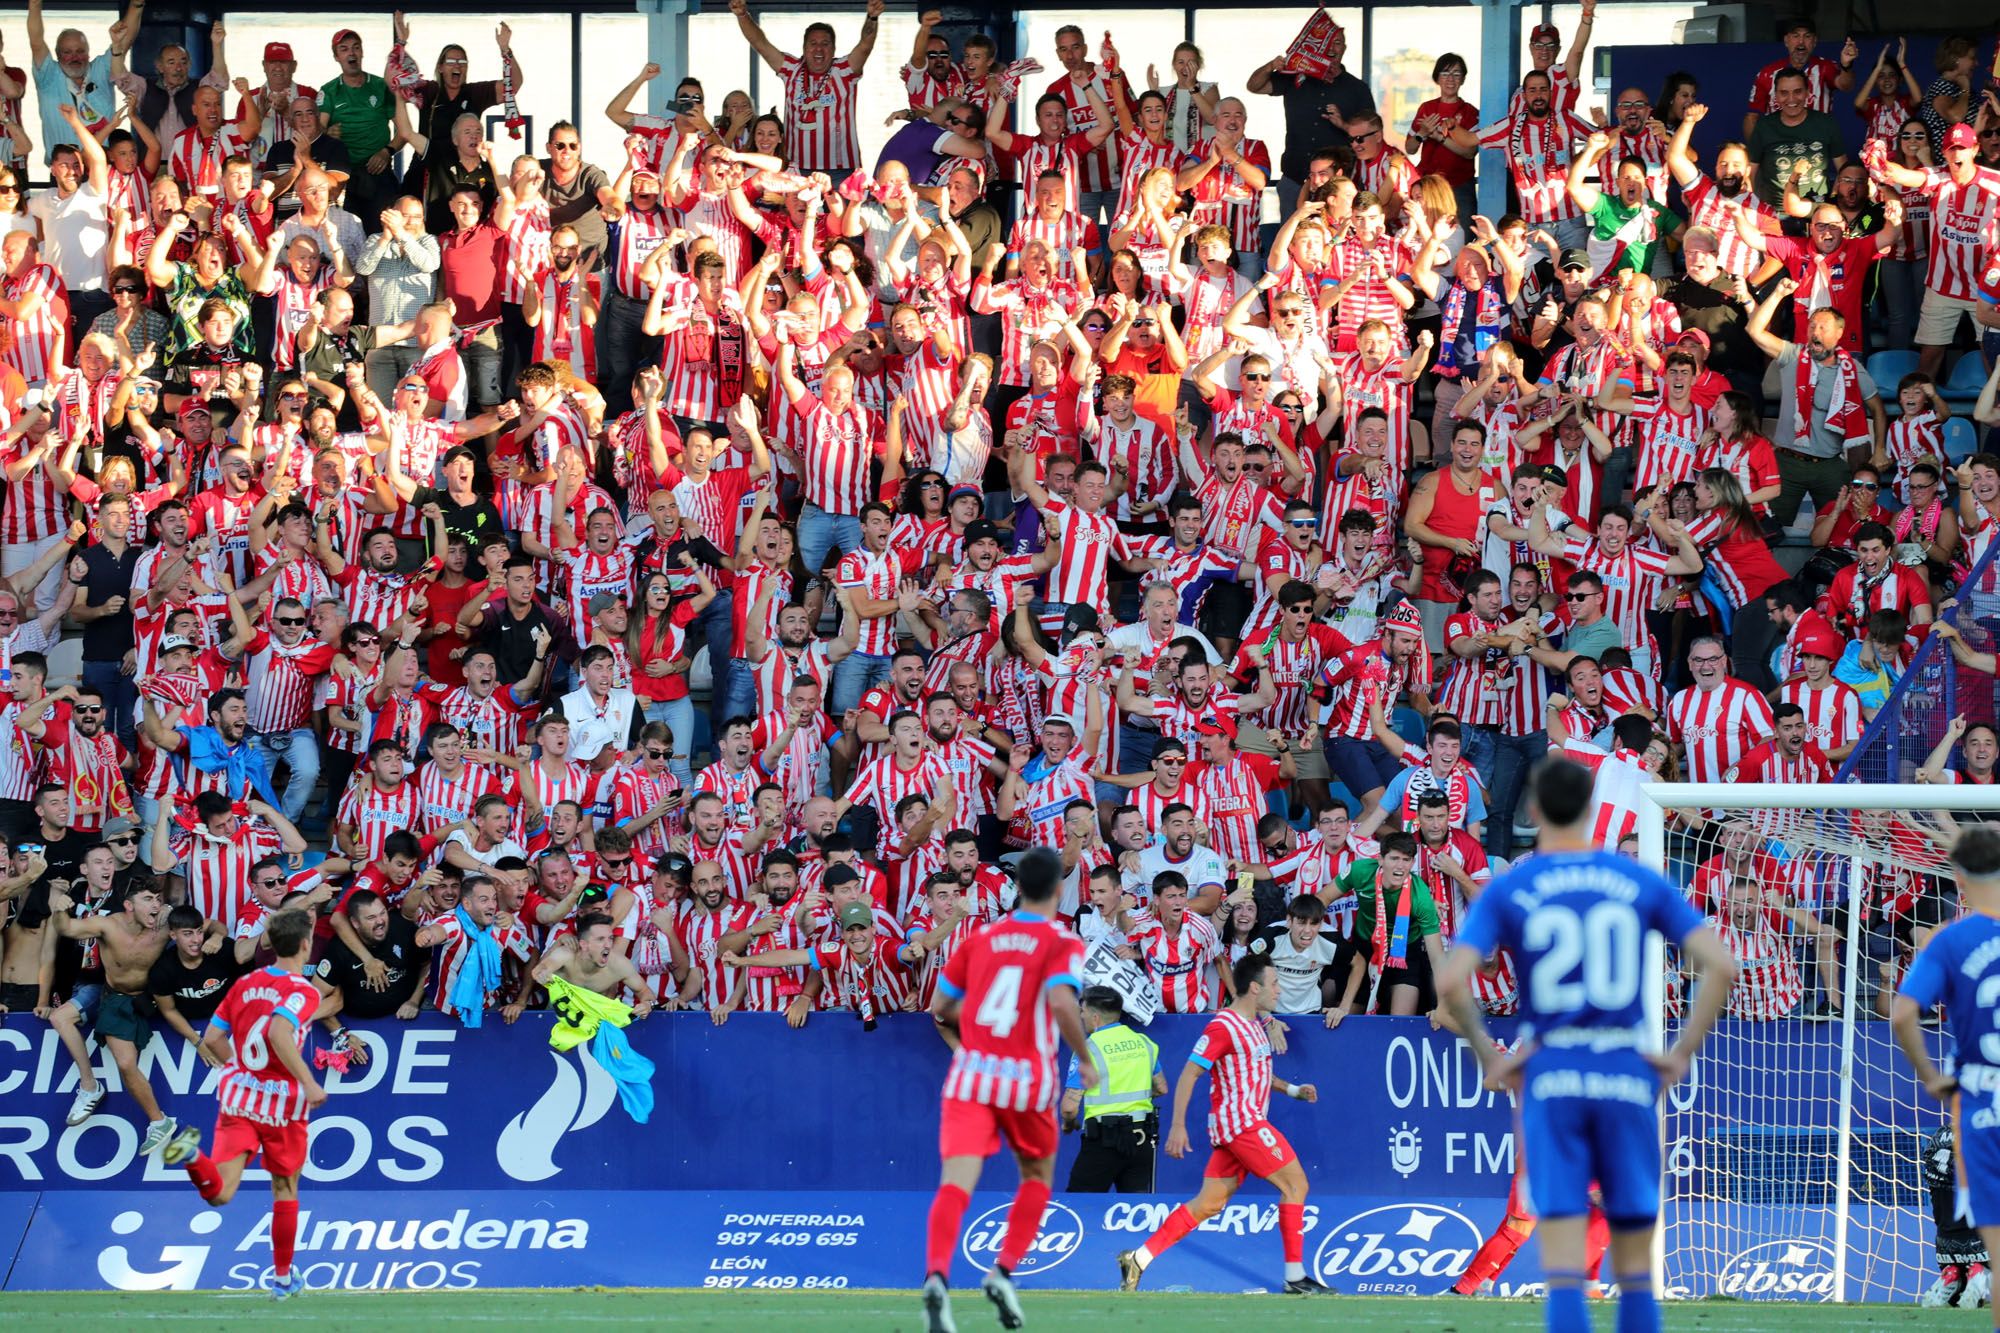 EN IMÁGENES: Así ha sido el partido entre la Ponferradina y el Sporting de Gijón